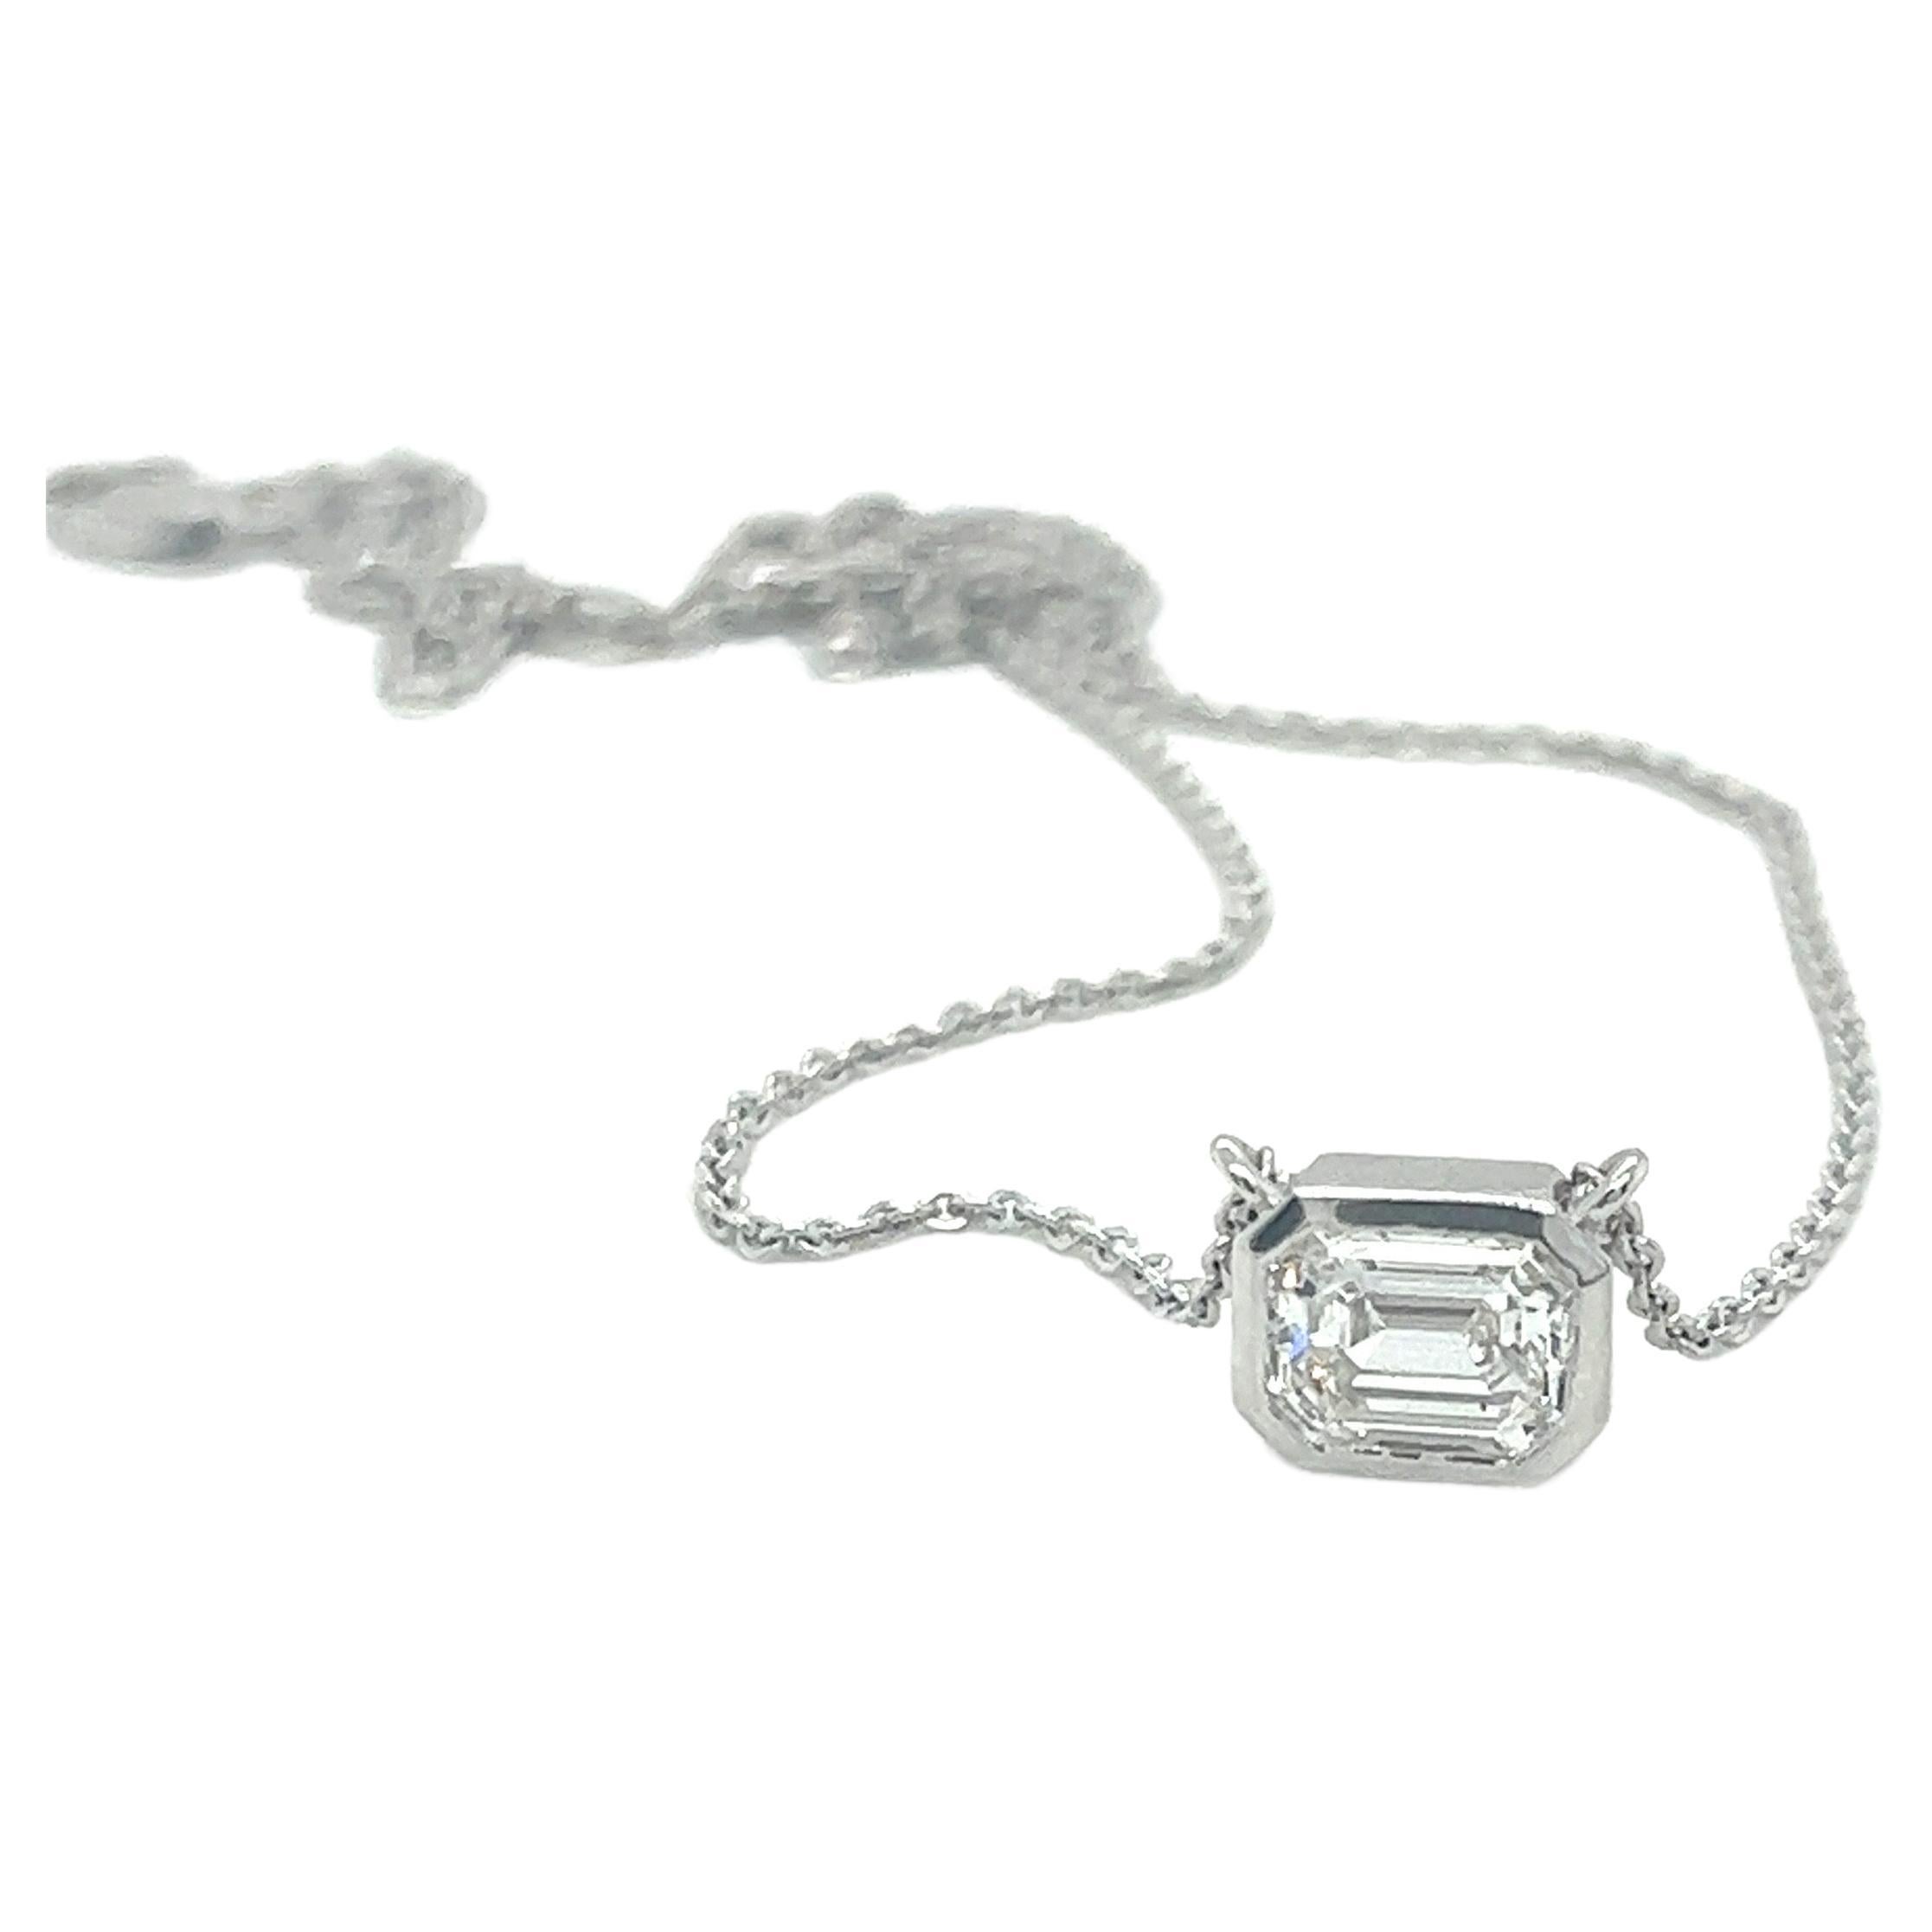 1.01 Carat F Color VS1 Emerald Cut Diamond Necklace For Sale